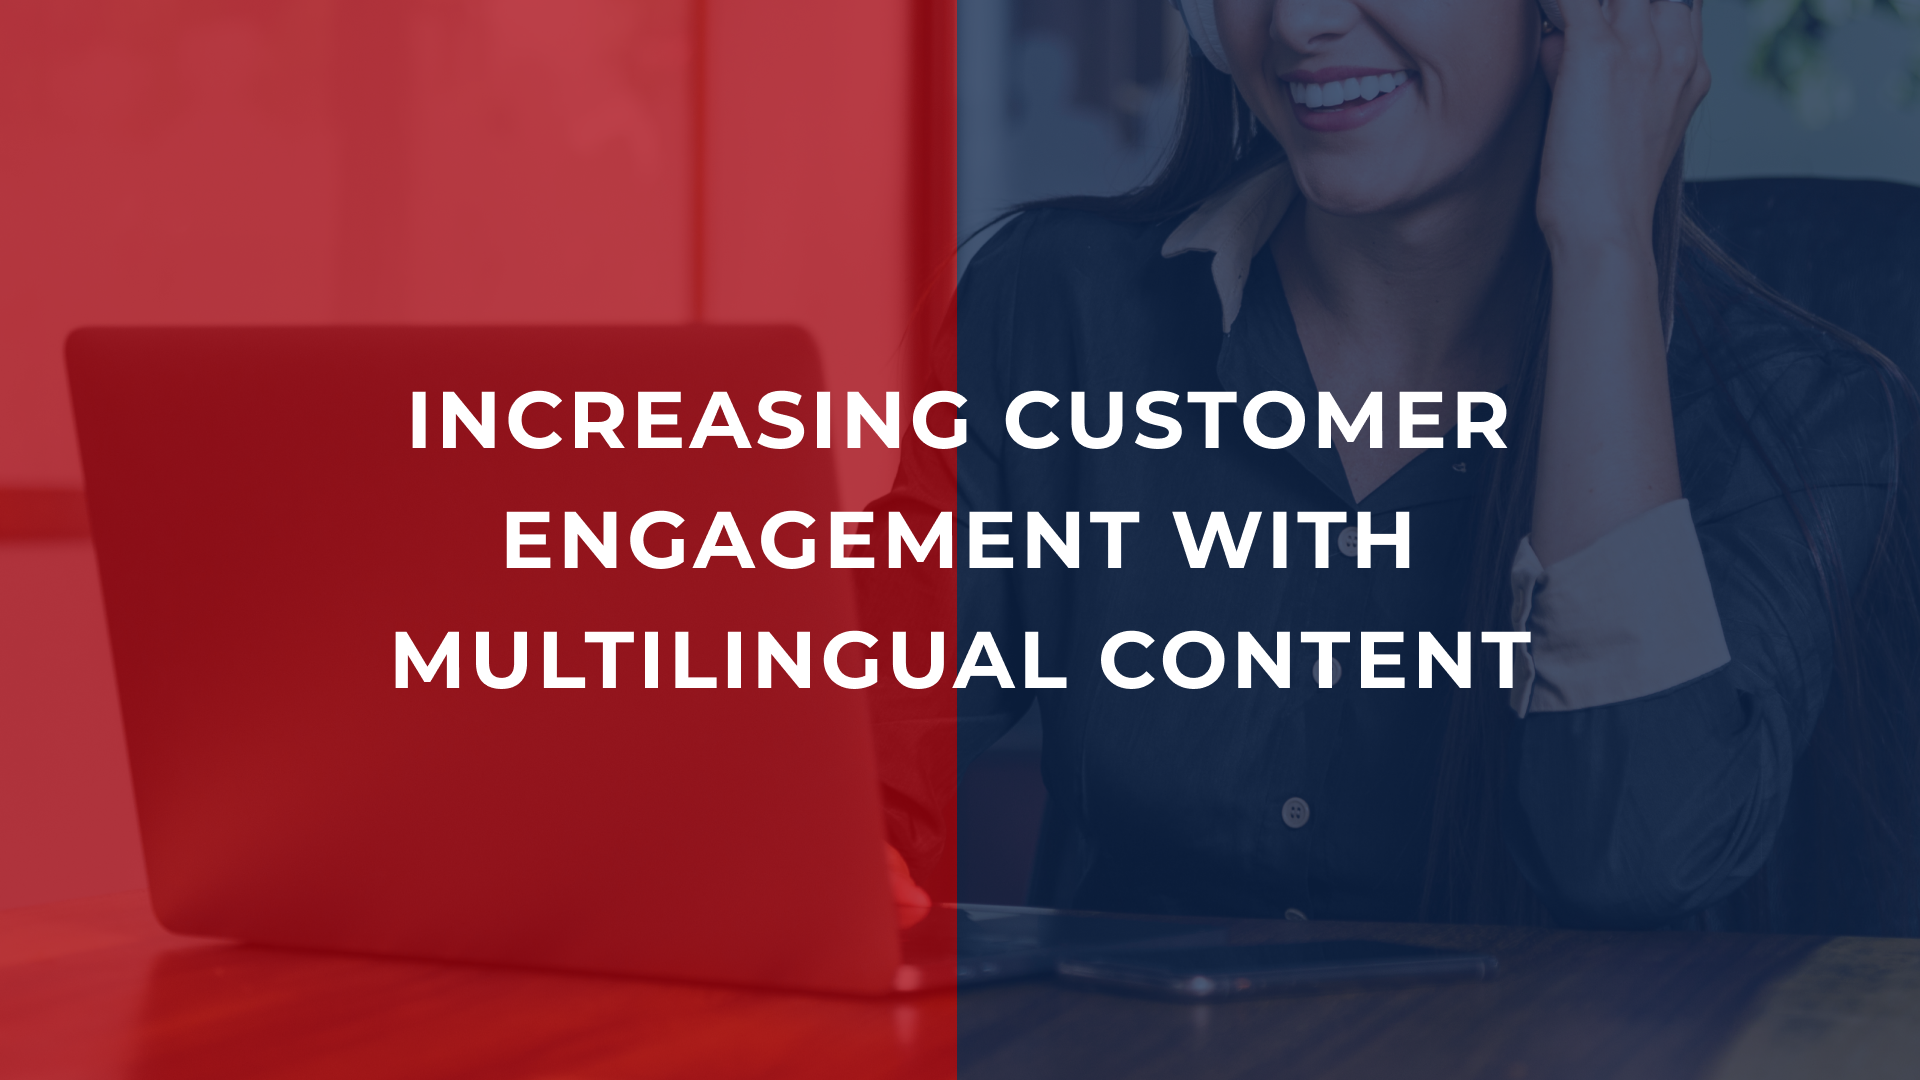 Язык имеет значение: Повышение привлечения клиентов с помощью многоязычного контента